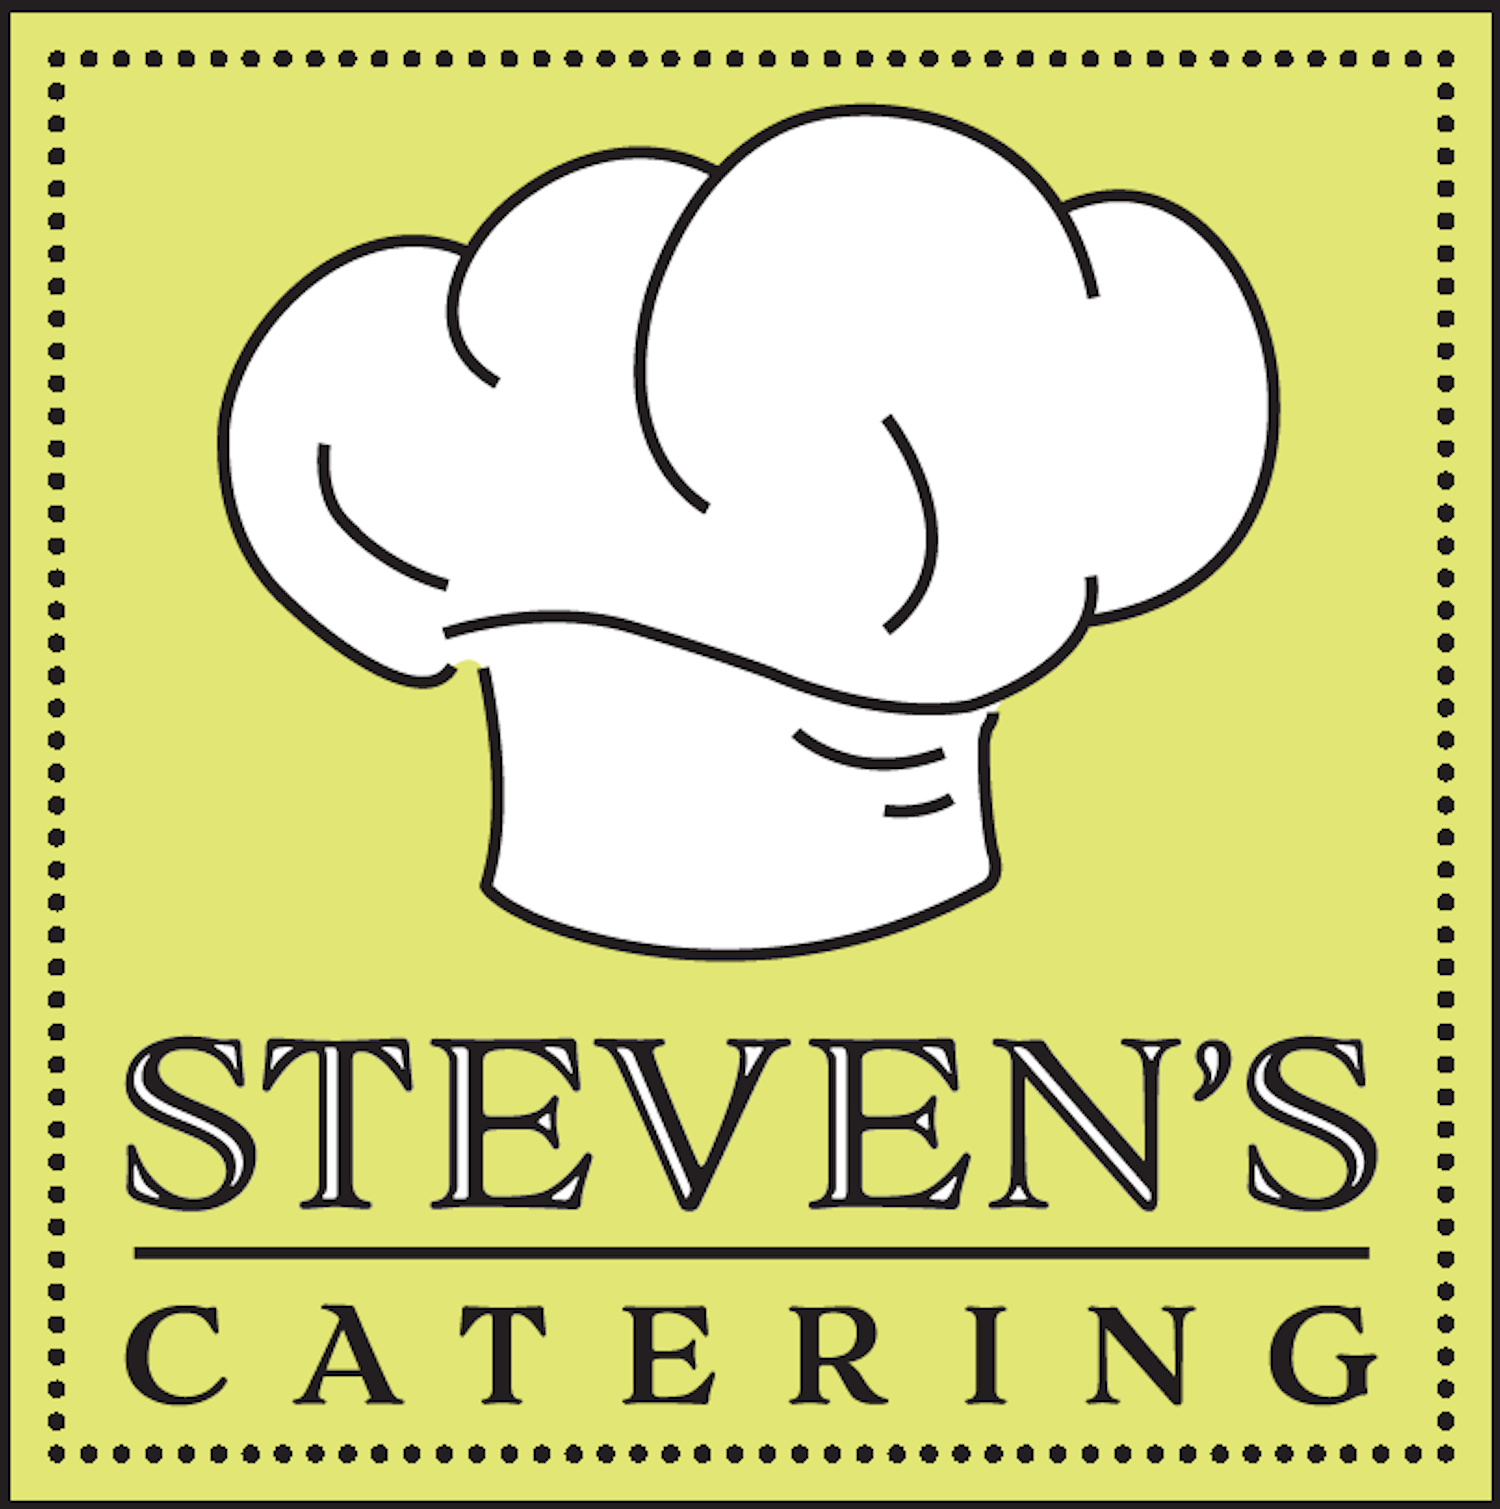 Steven's Catering